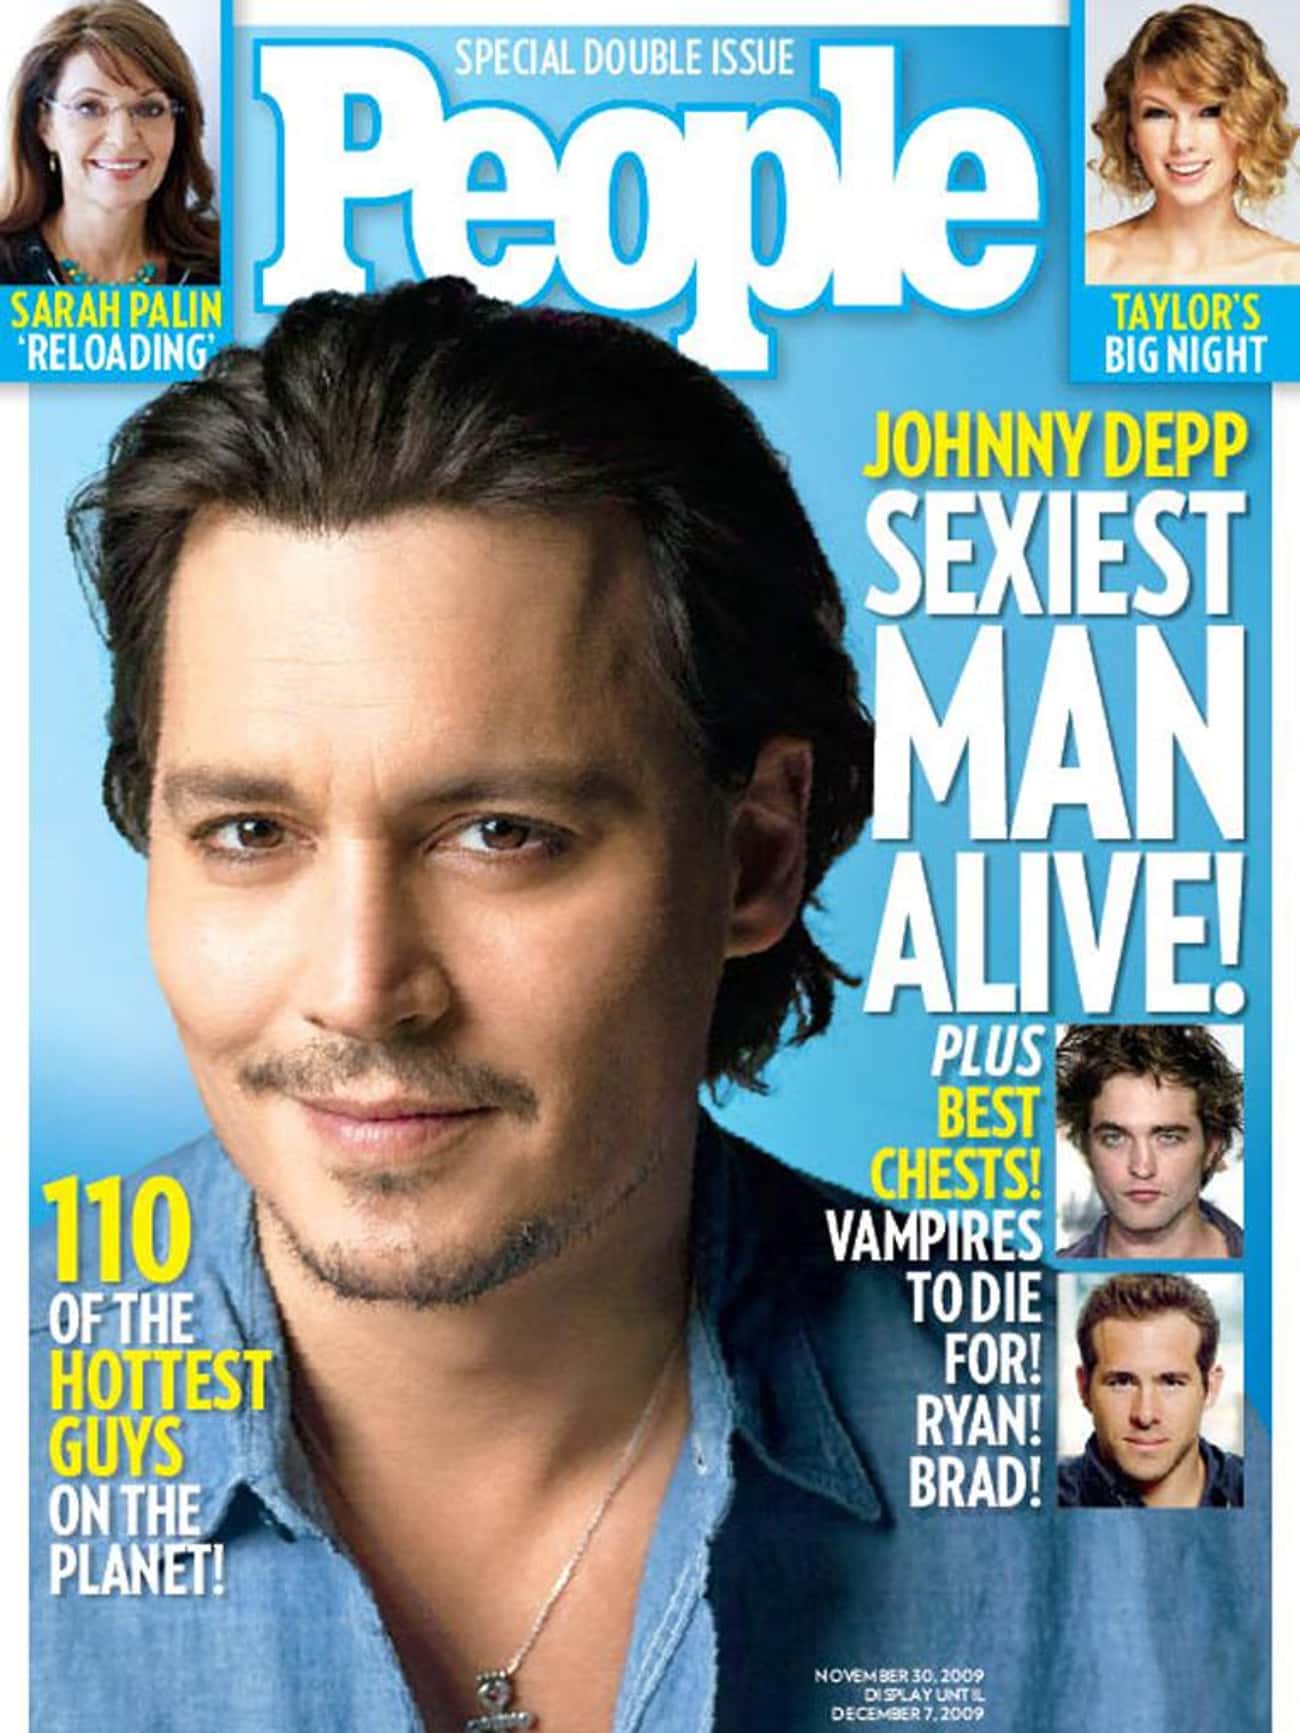 2009 - Johnny Depp